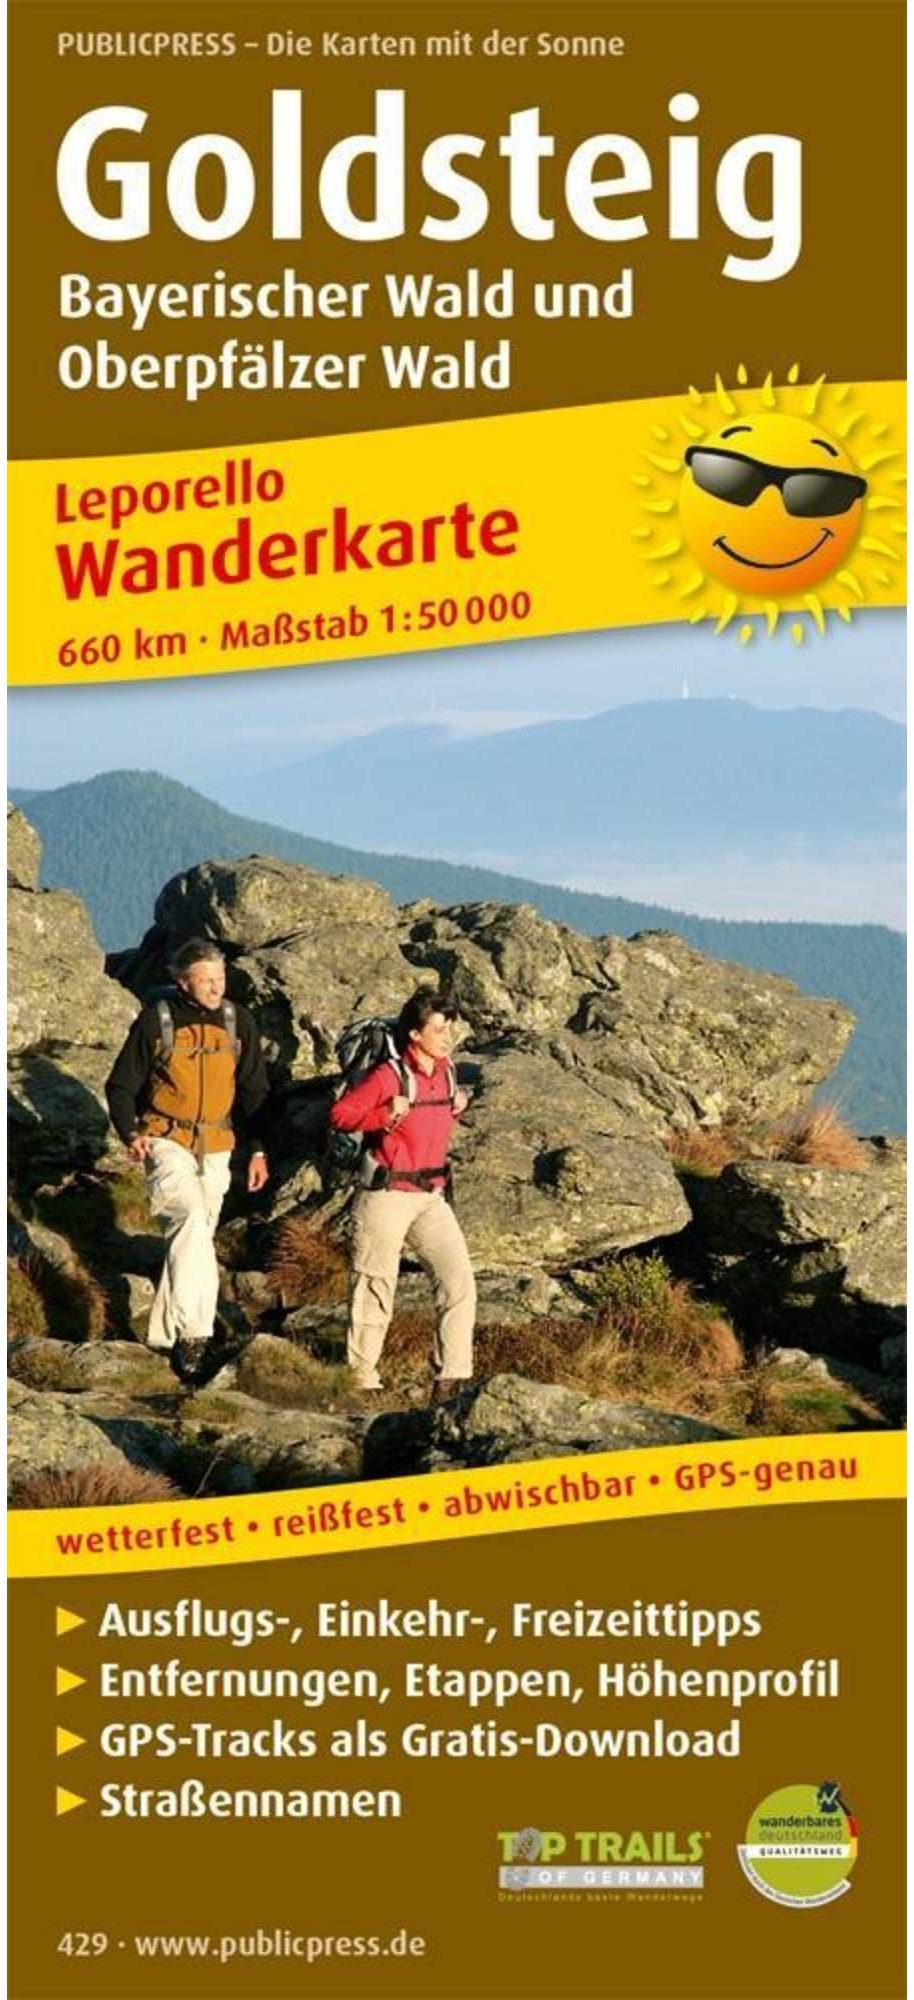 Wanderkarte Goldsteig, Bayerischer Wald und Oberpfälzer Wald 1 : 50 000 -  Wanderkarten und Winterkarten